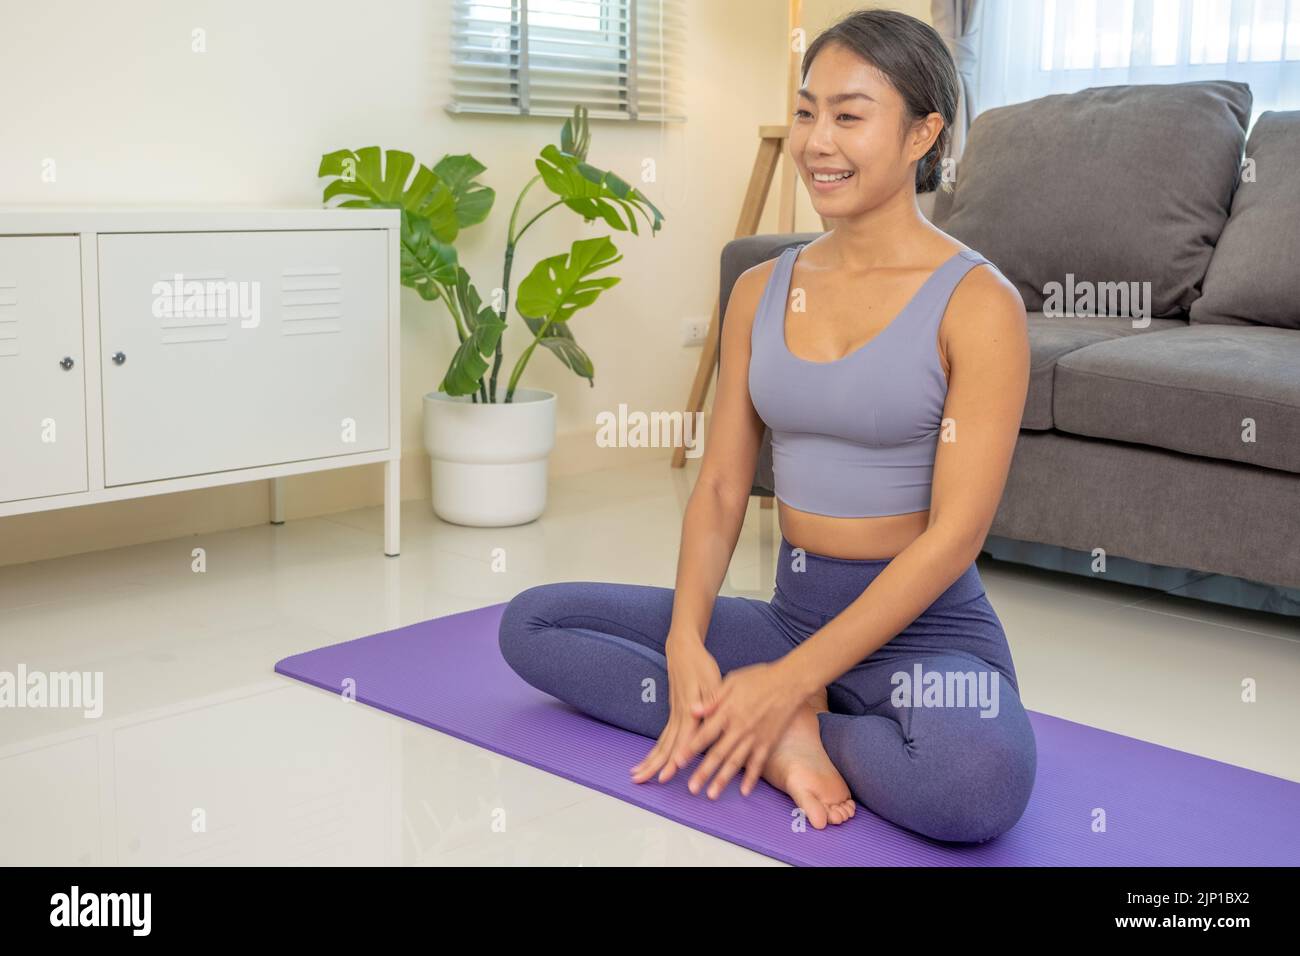 Gente asiática que practica clases de yoga sobre una colchoneta en la sala de estar. Las mujeres jóvenes con artículos deportivos enseñan a ejercitar el entrenamiento de yoga en casa Foto de stock